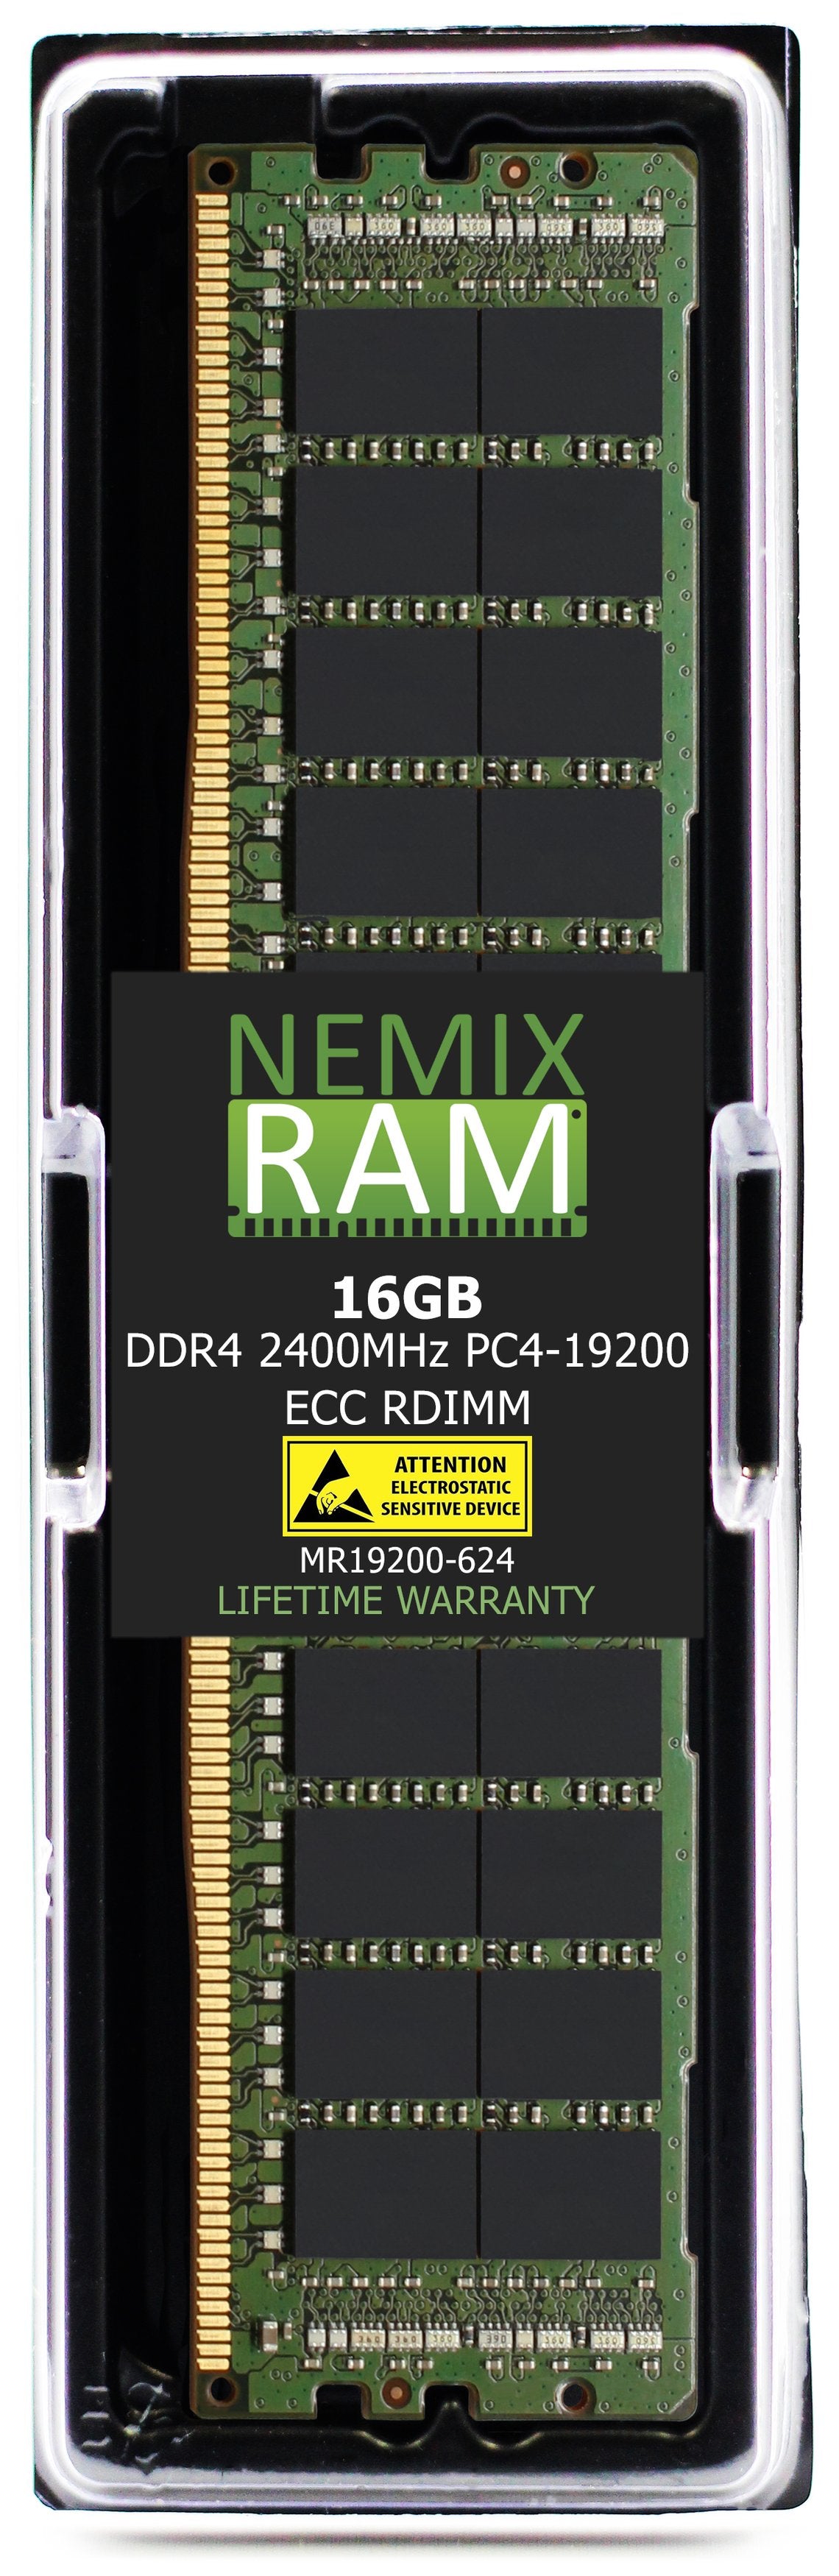 Hynix HMA42GR7AFR4N-UH 16GB DDR4 2400MHZ PC4-19200 RDIMM Compatible Memory Module